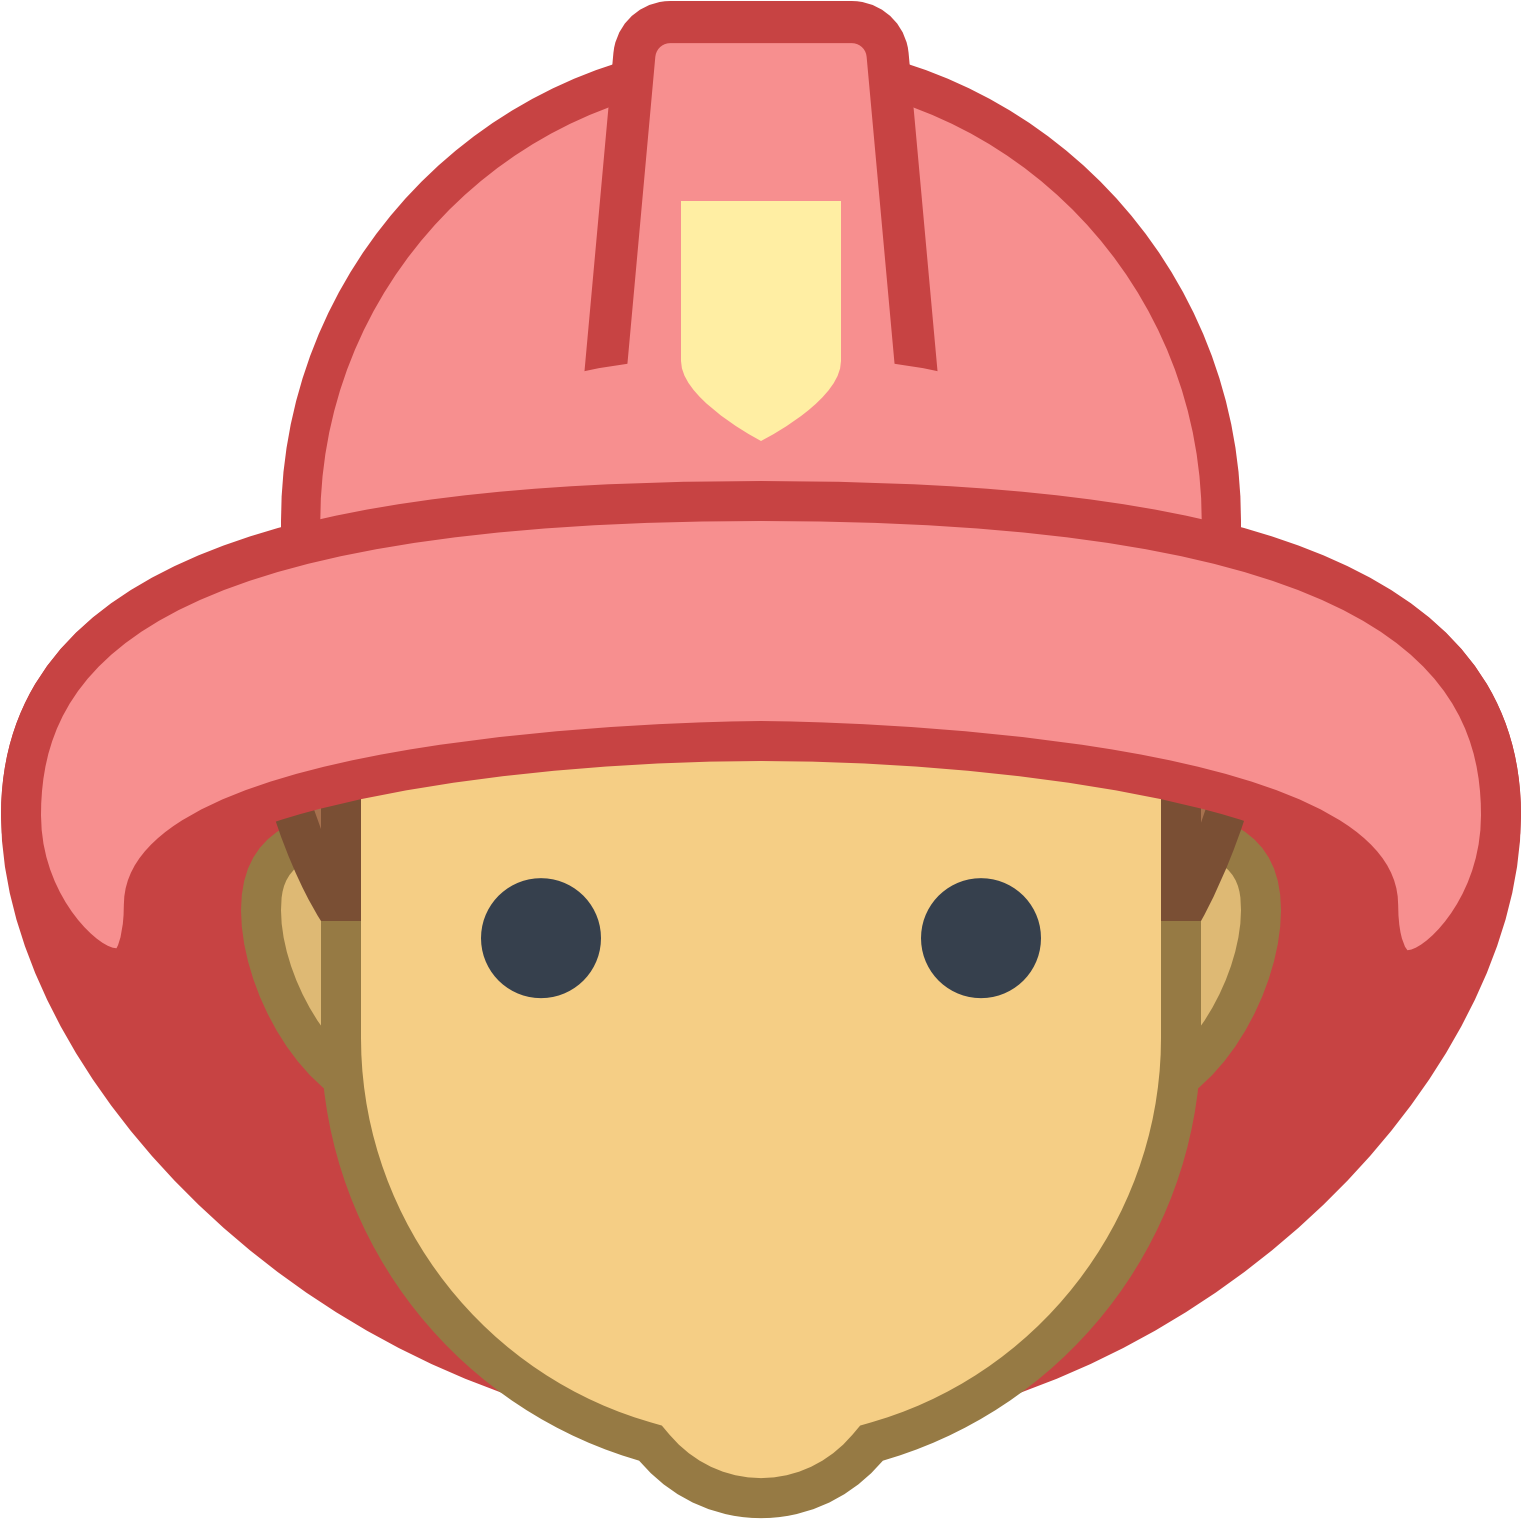 A Cartoon Of A Fireman's Head